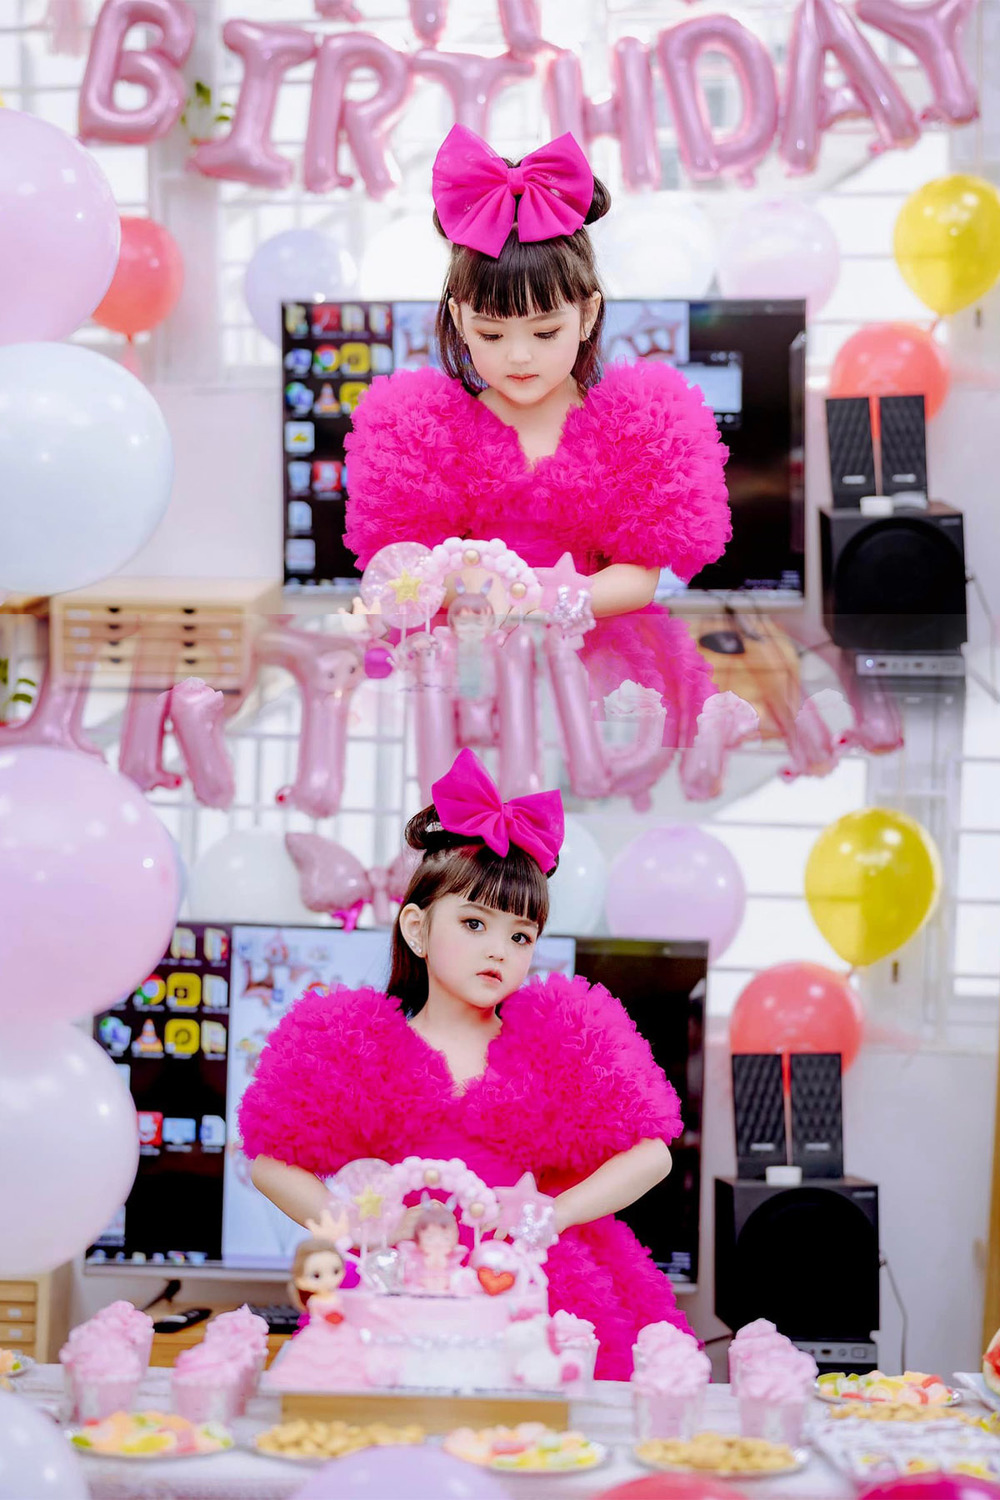  
Bé Cherry An Nhiên hóa nàng công chúa trong buổi tiệc sinh nhật mừng 5 tuổi ngập sắc hồng. (Ảnh: Facebook Nguyễn Ly Ly) - Tin sao Viet - Tin tuc sao Viet - Scandal sao Viet - Tin tuc cua Sao - Tin cua Sao